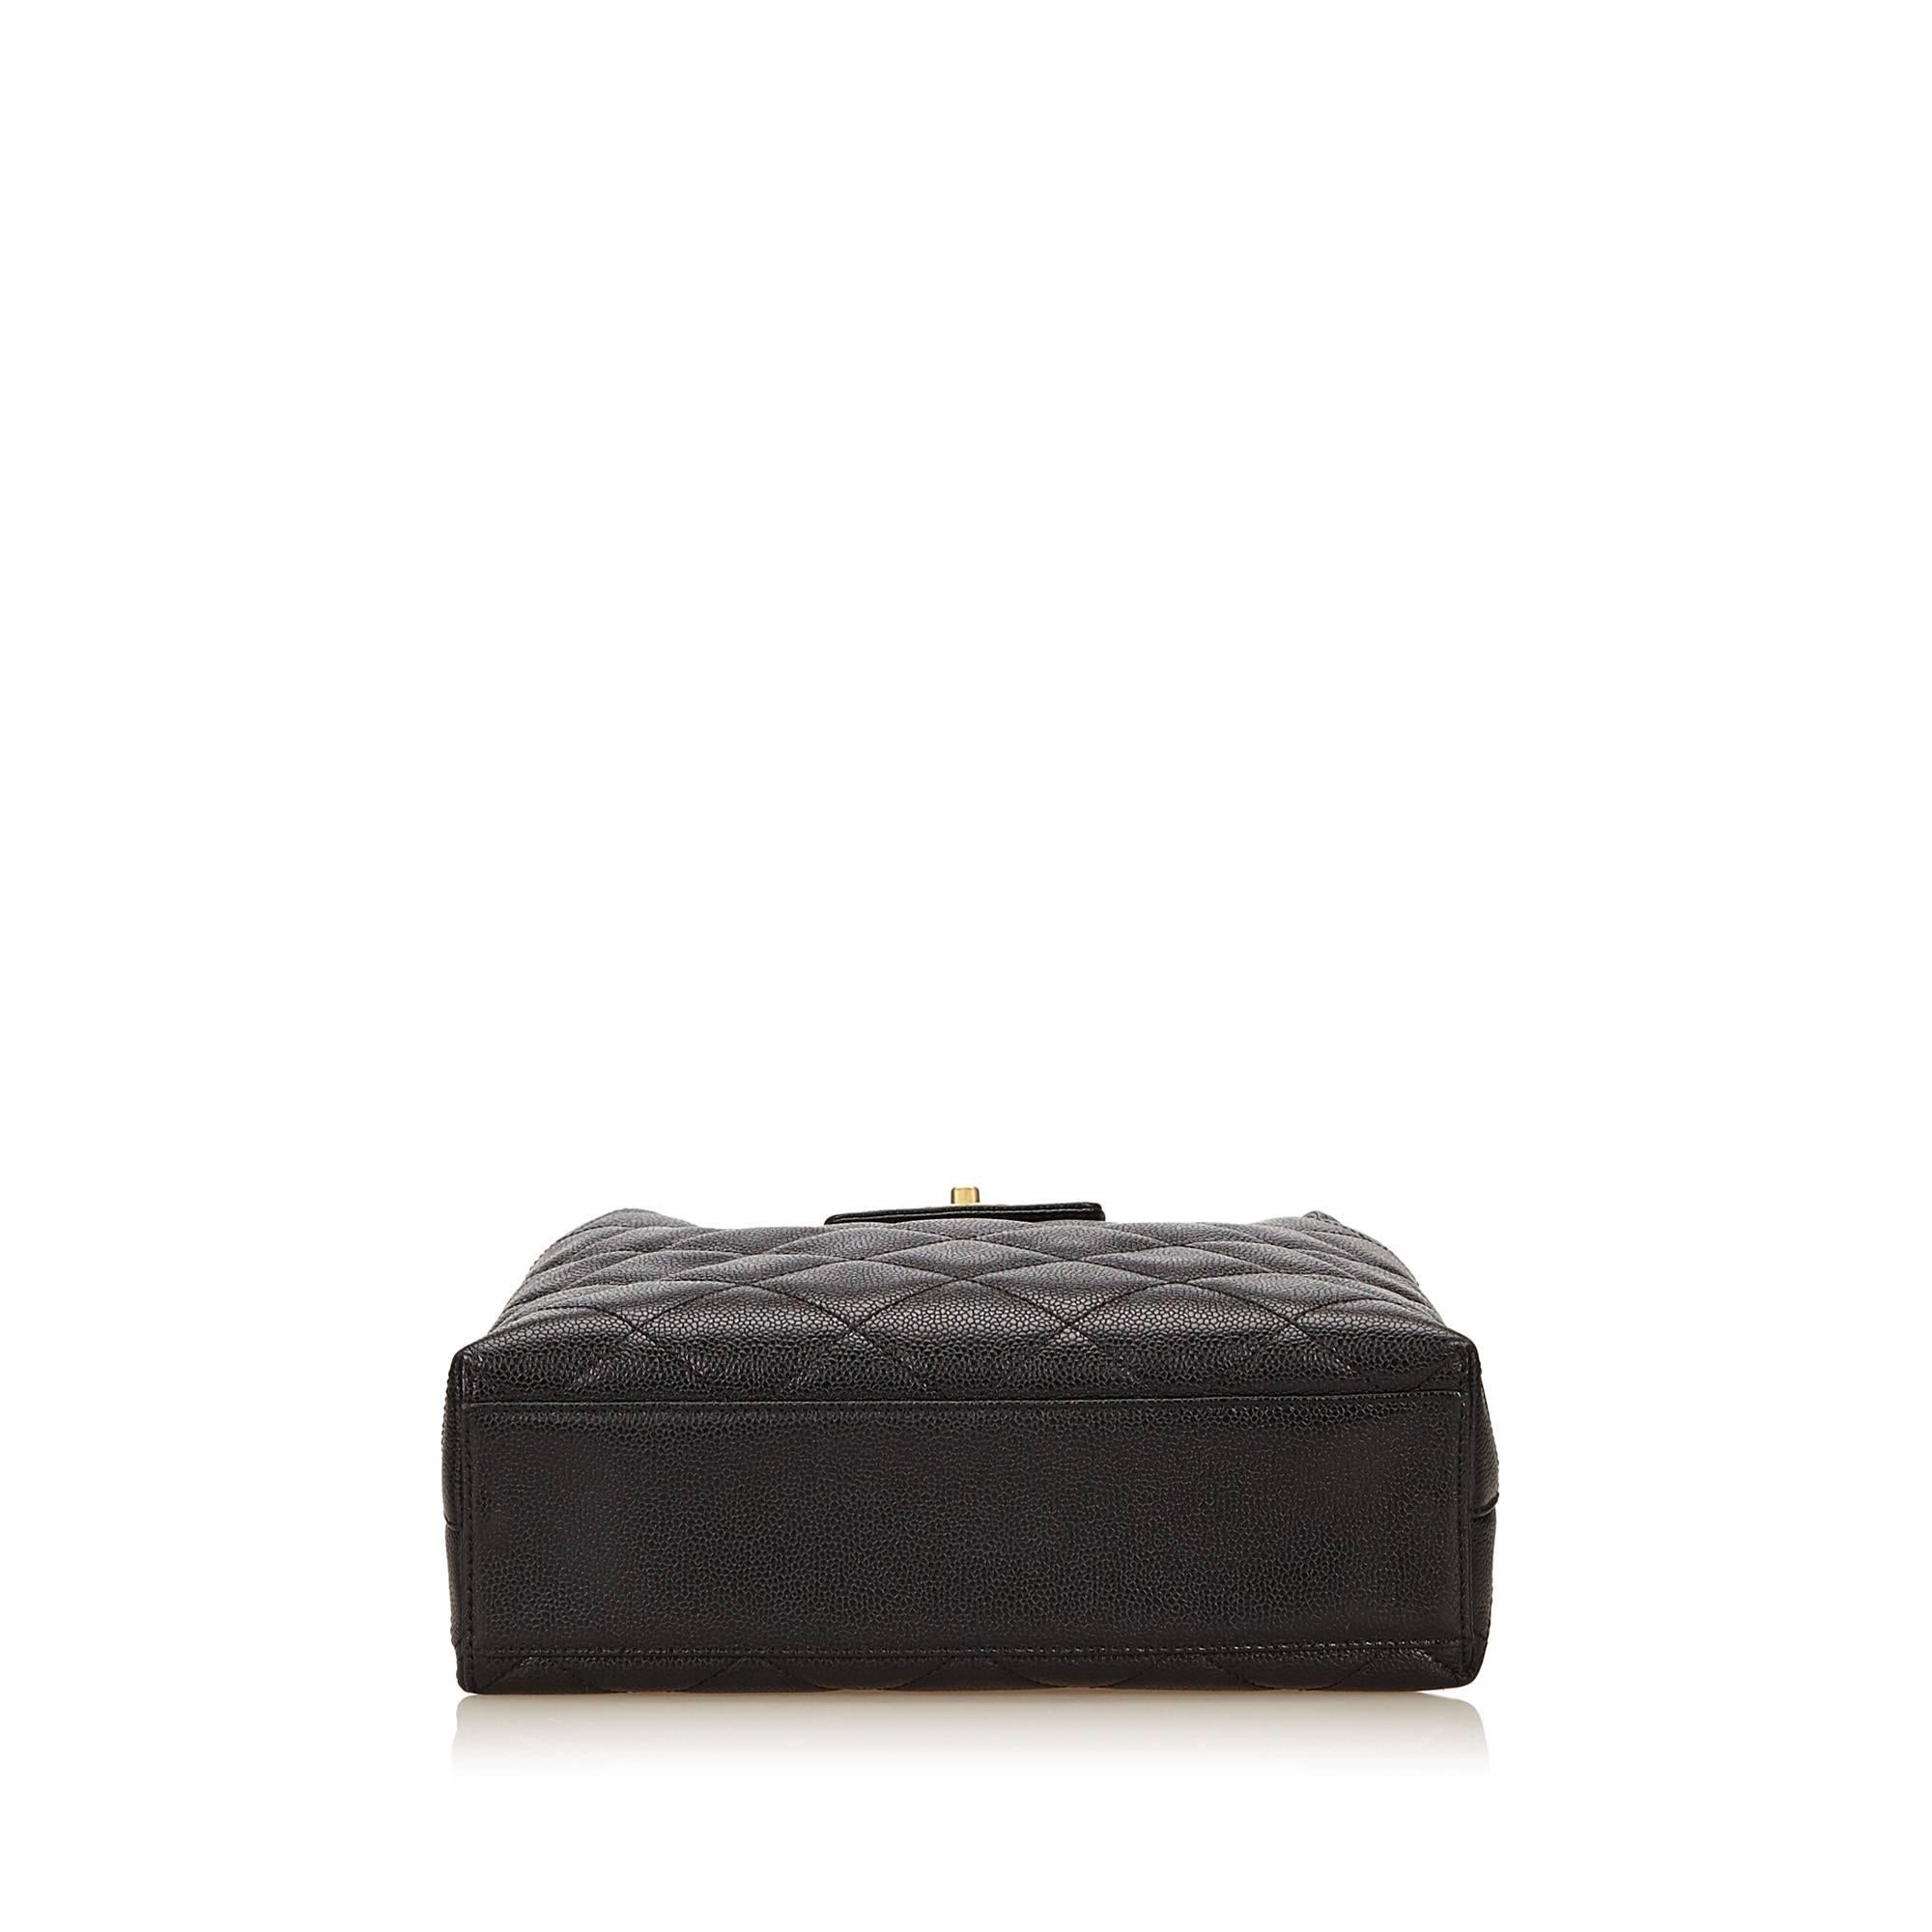 Chanel Black Matelasse Quilted Caviar Leather Shoulder Bag 1